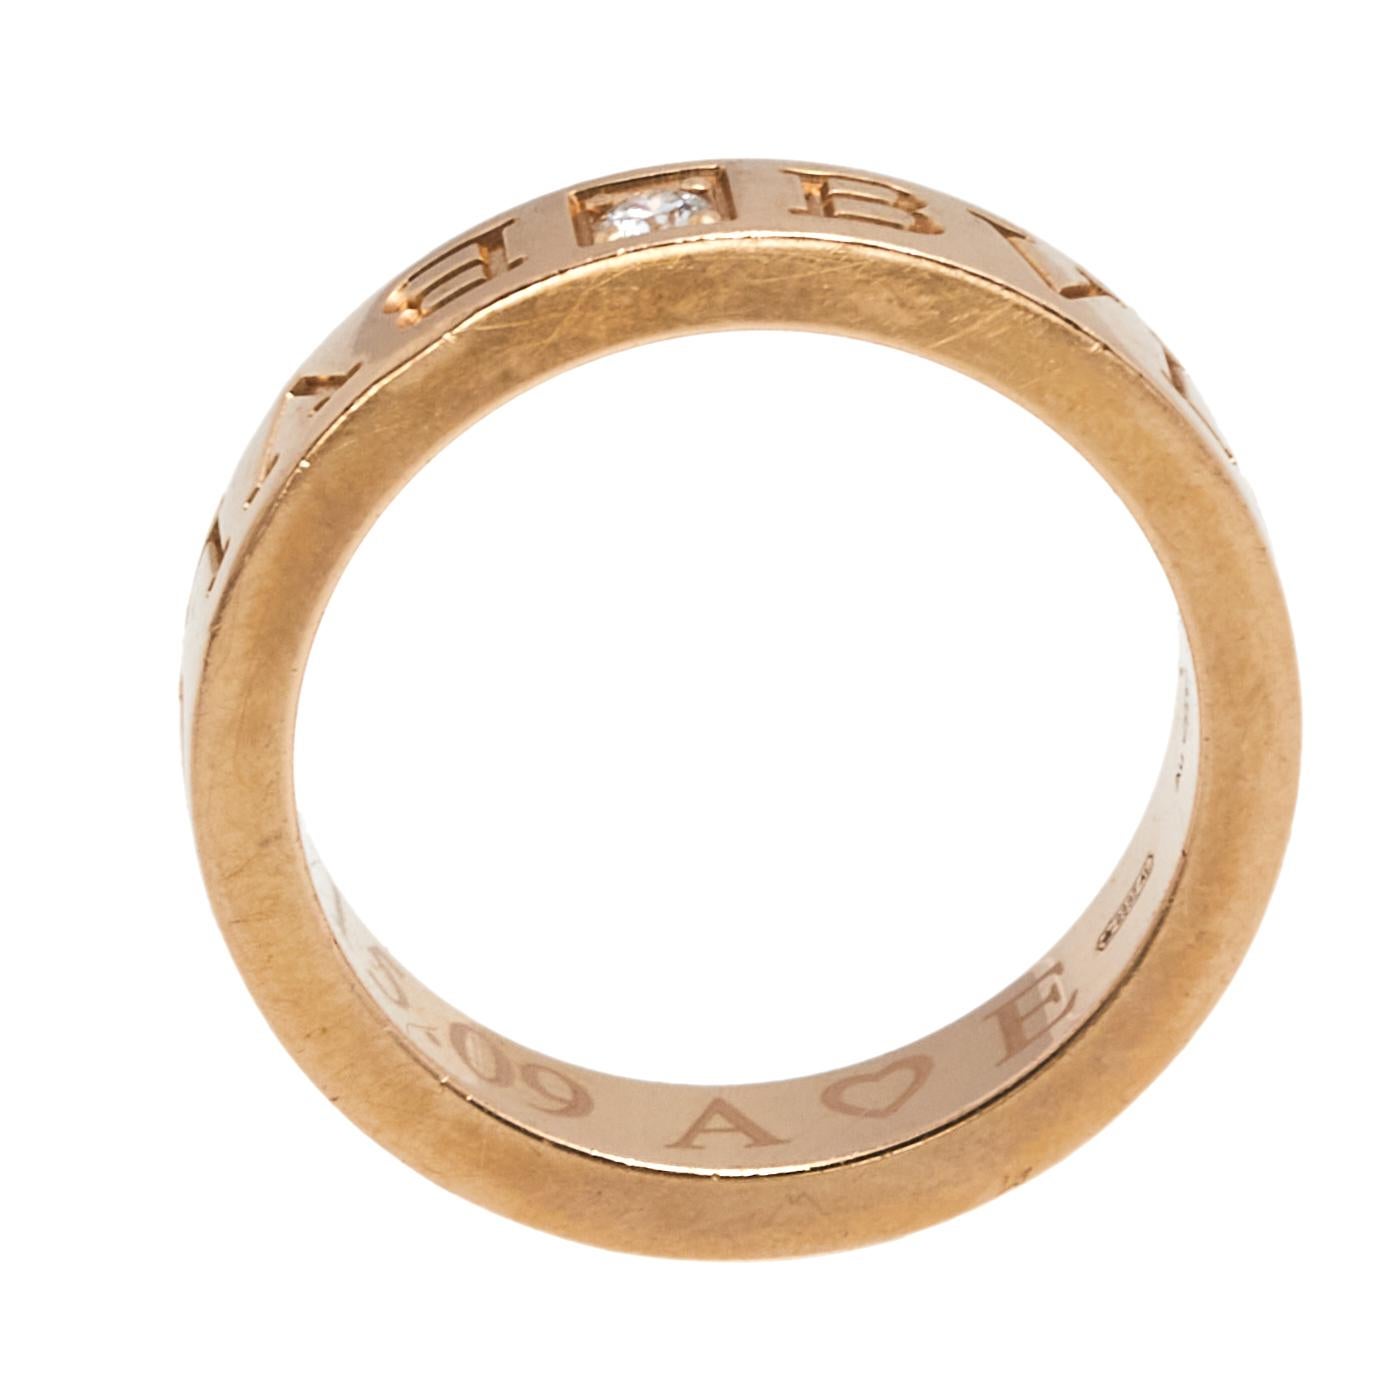 Bvlgari Bvlgari Diamond 18k Rose Gold Band Ring Size 51 1